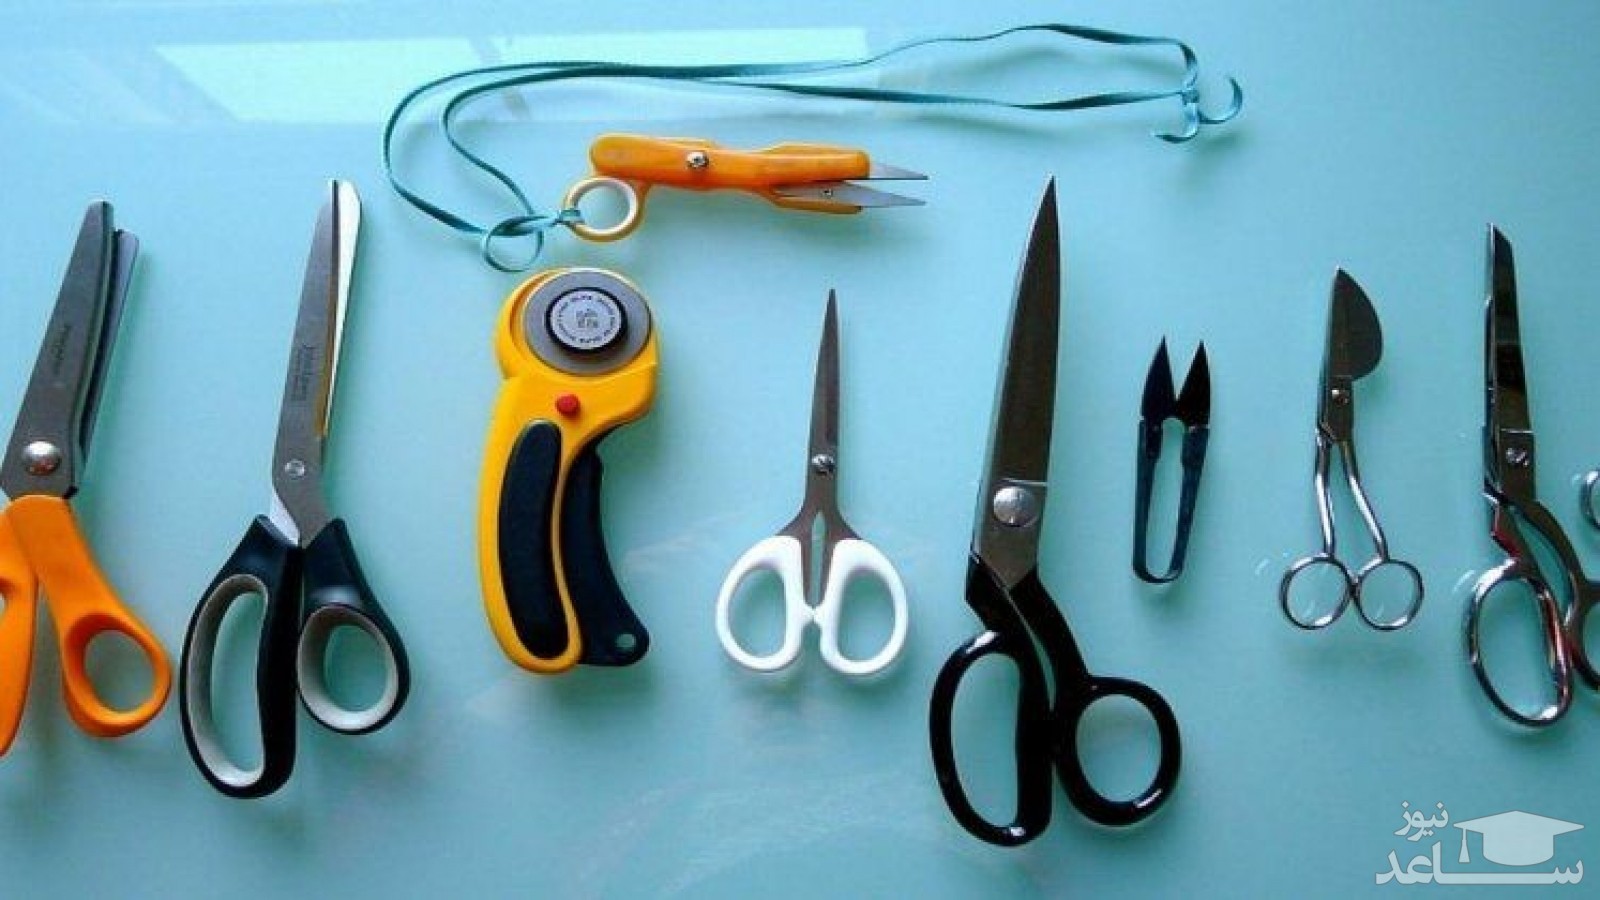 راهنمای خرید قیچی با کیفیت برای منزل و کاربرد انواع قیچی